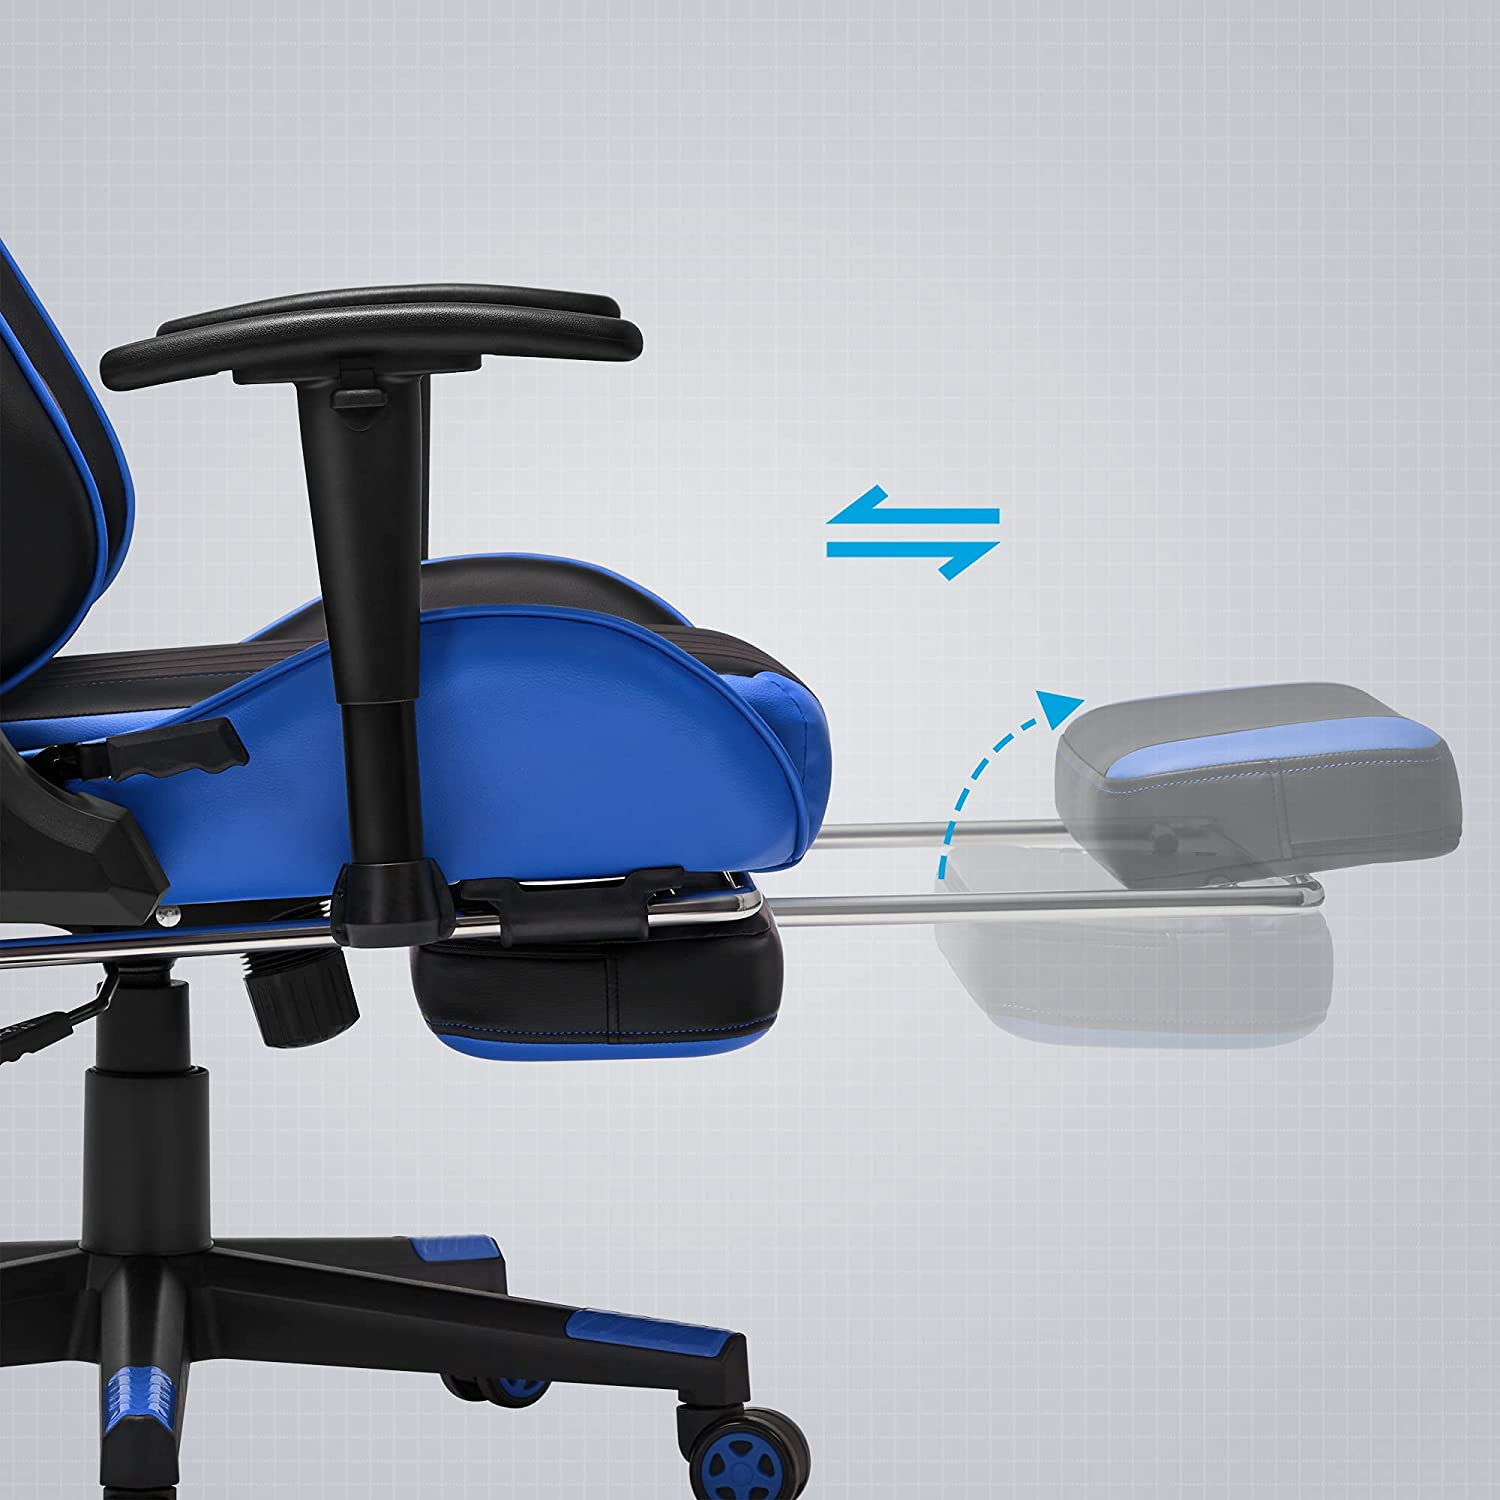 Kancelárska stolička RCG016B02